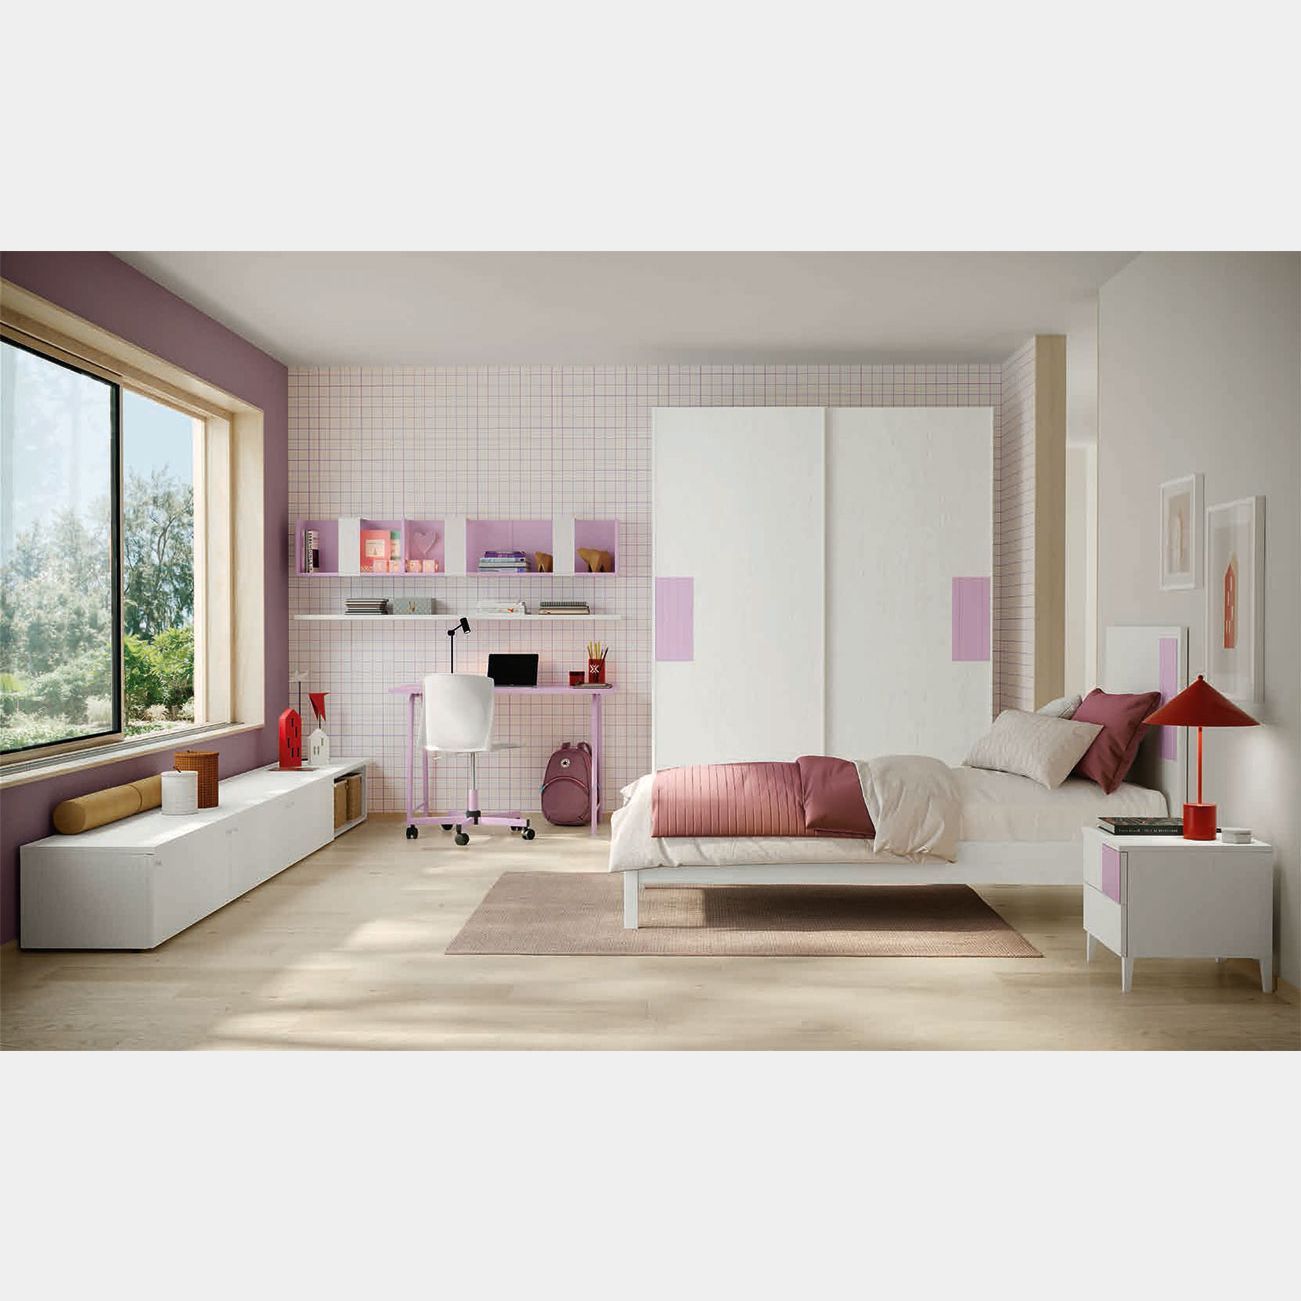 Moderno armadio rosa semplice casa camera da letto armadi